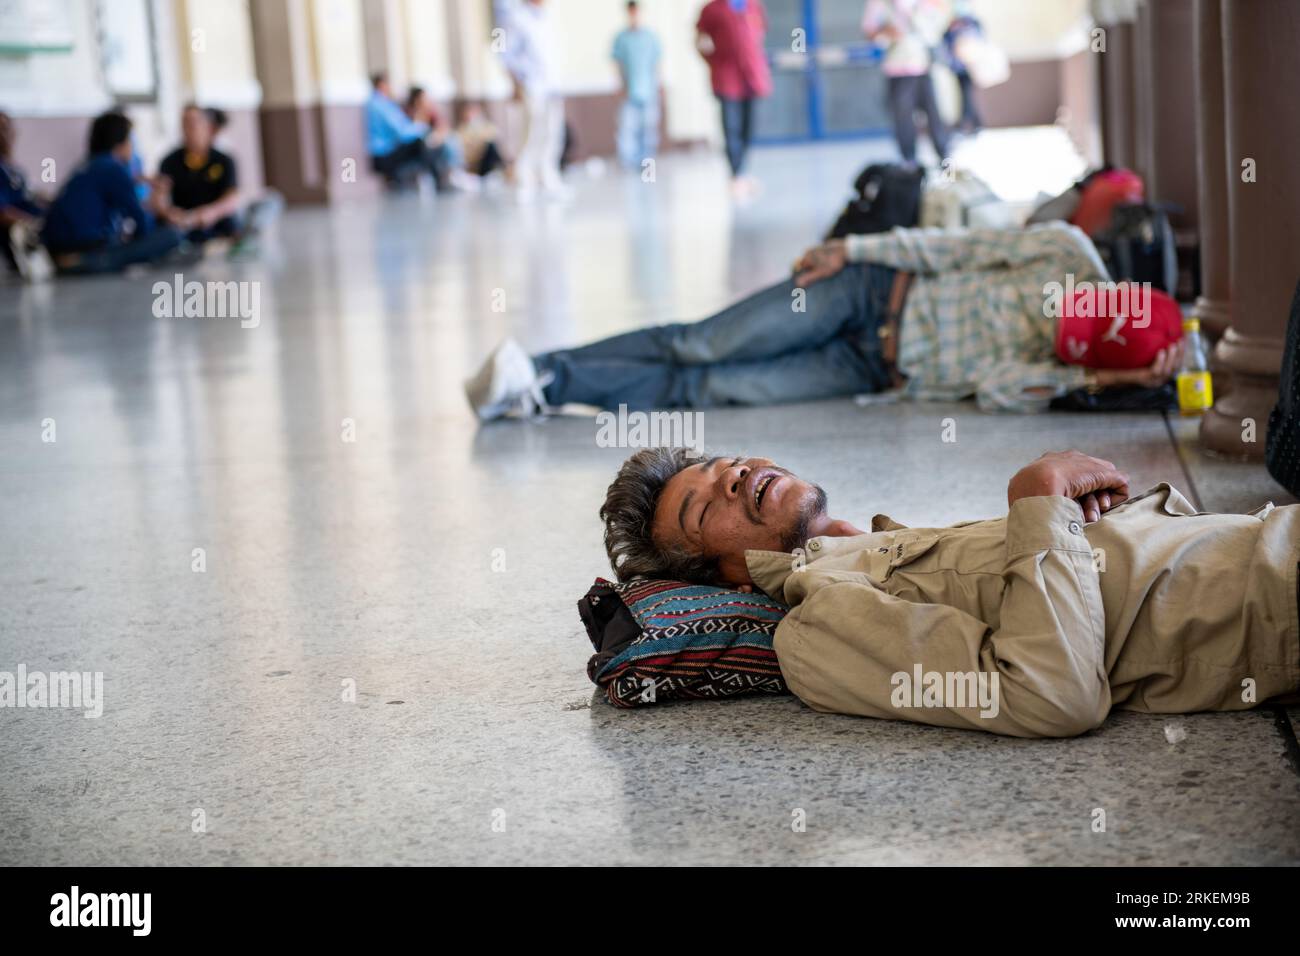 Bangkok, Bangkok, Thailandia: Una vista sincera della sala d'ingresso della stazione ferroviaria di Bangkok, che mostra i senzatetto che dormono sul pavimento. Foto Stock